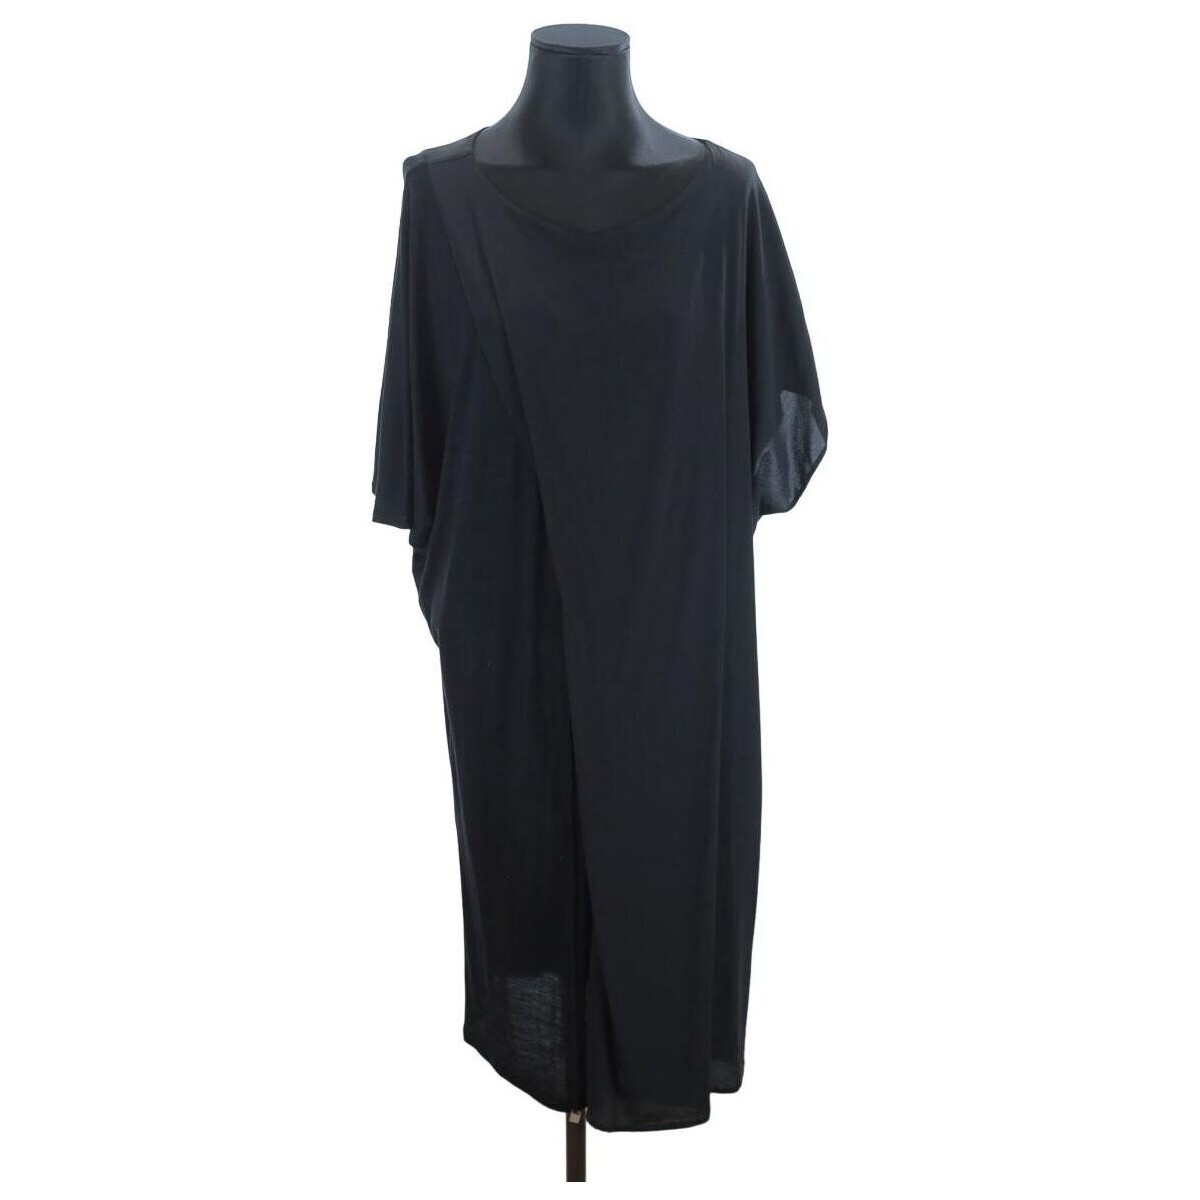 Vêtements Femme Robes Vintage Robe en soie Noir